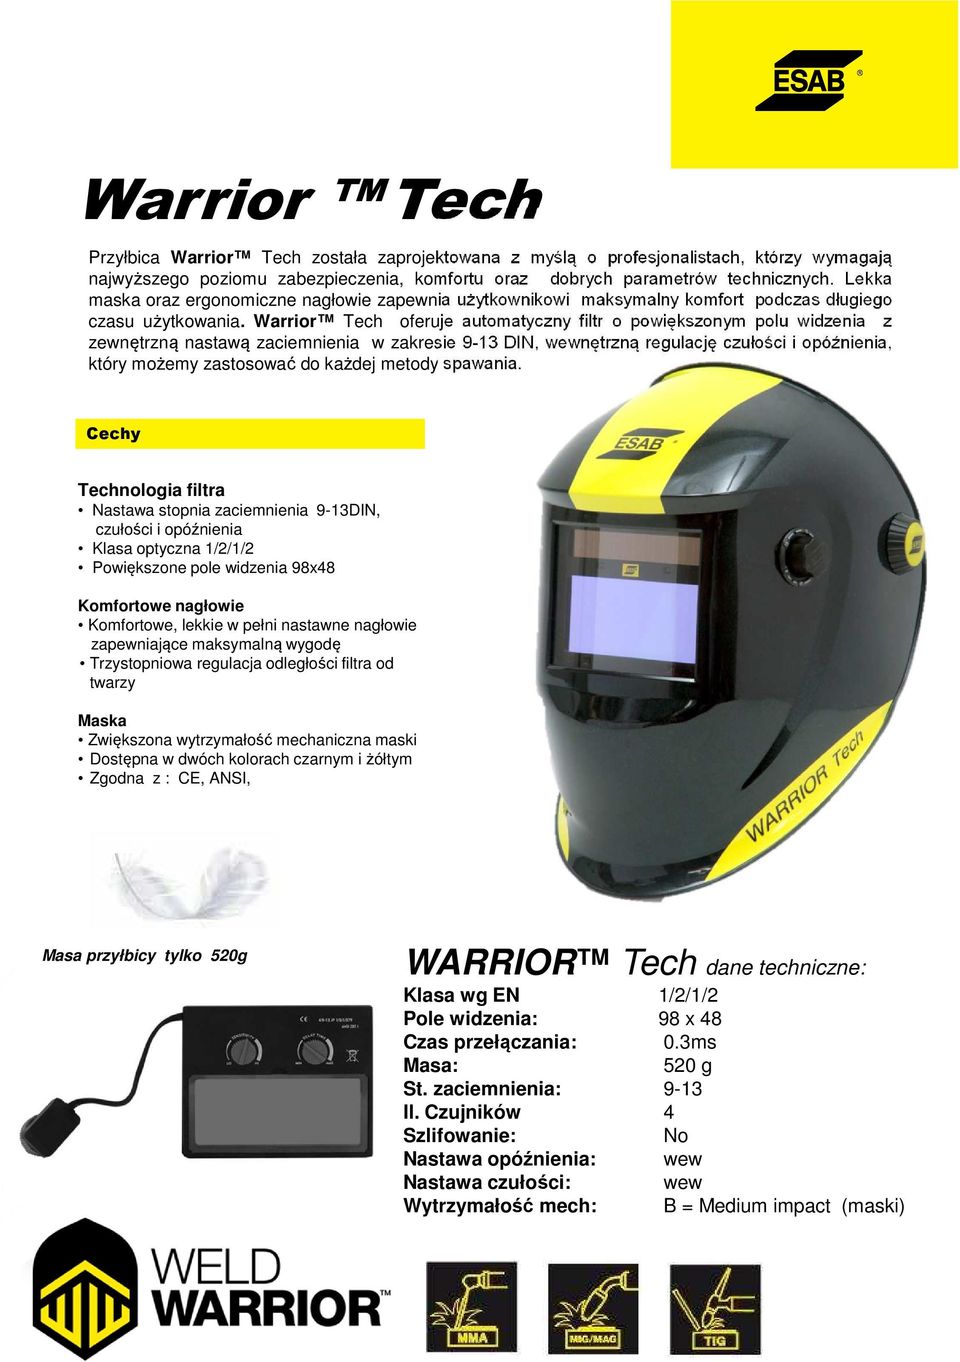 Warrior Tech oferuje automatyczny filtr o powiększonym polu widzenia z zewnętrzną nastawą zaciemnienia w zakresie 9-13 DIN, wewnętrzną regulację czułości i opóźnienia, który możemy zastosować do